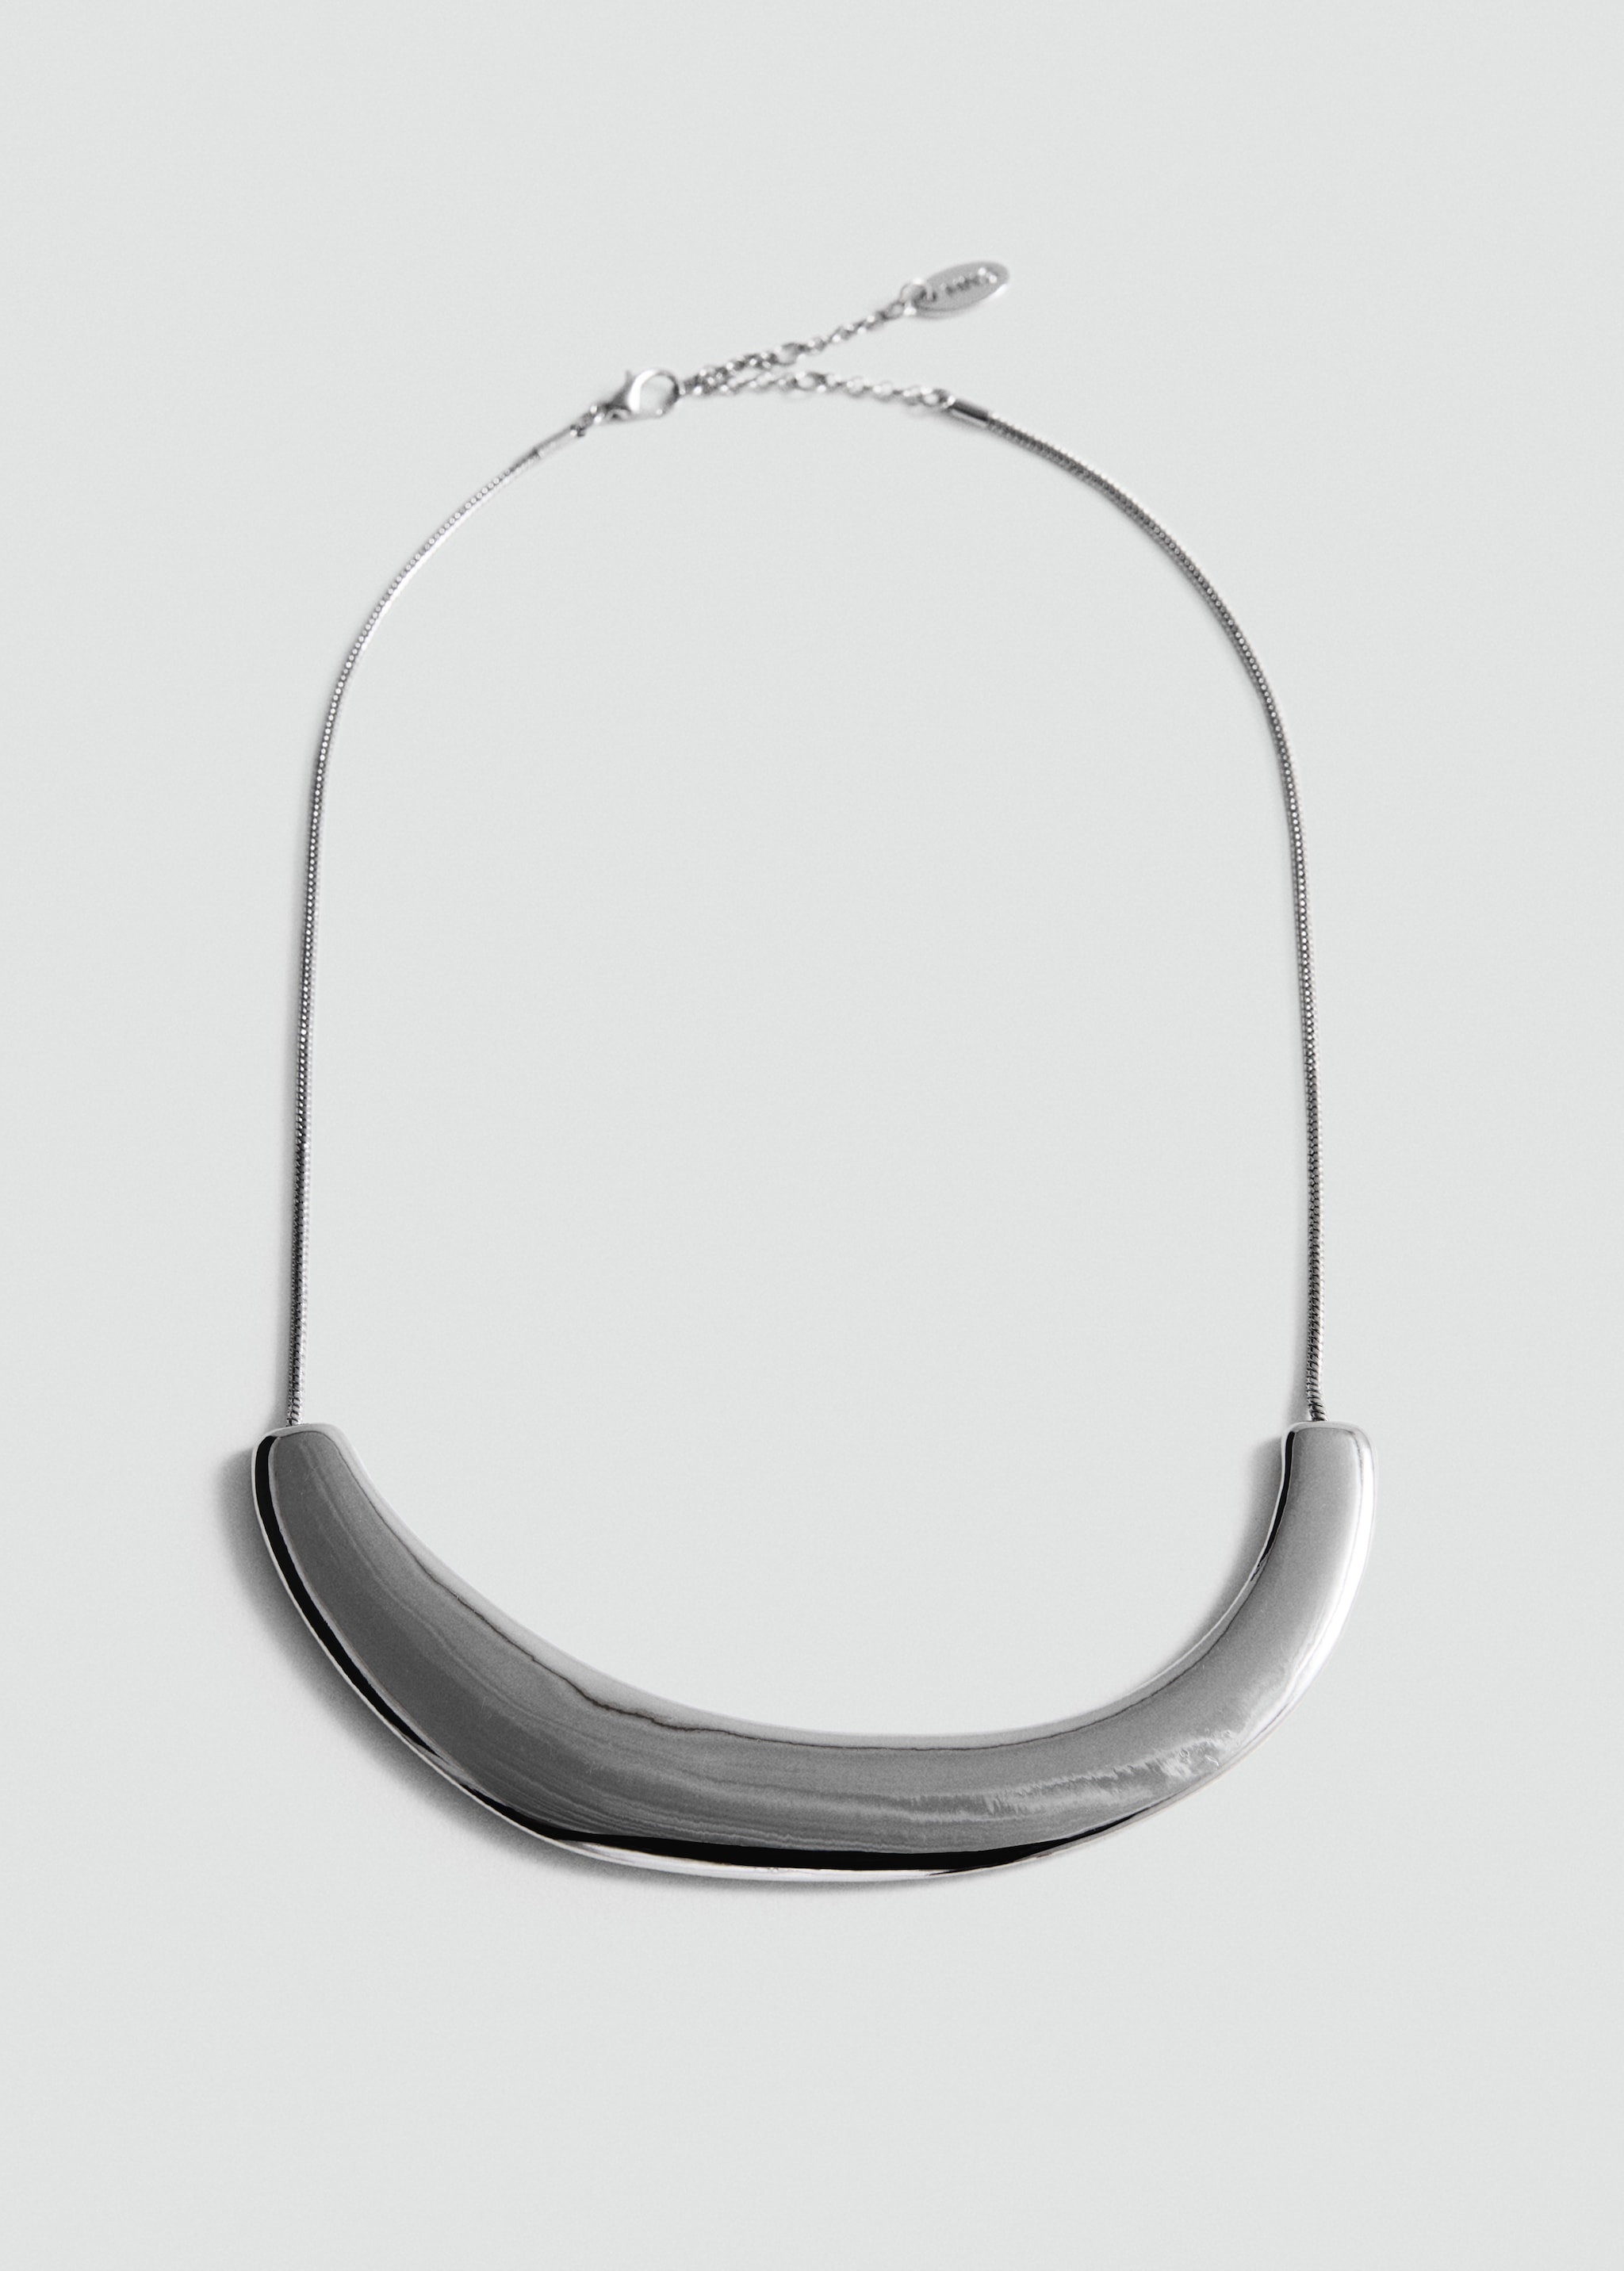 Комбинированное жесткое ожерелье - Изделие без модели